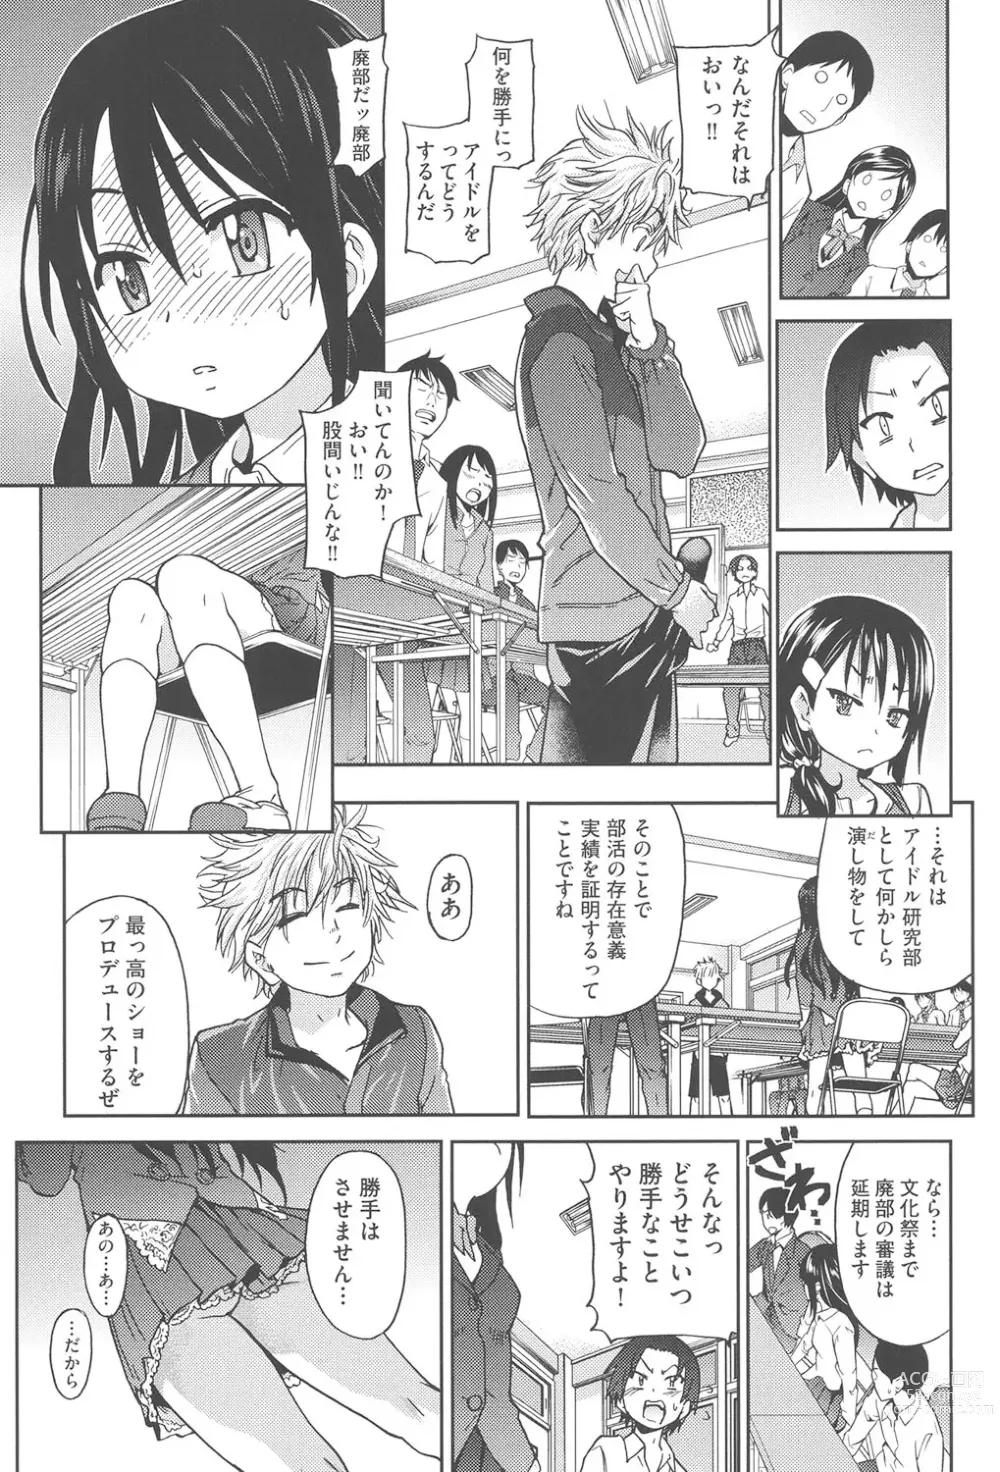 Page 14 of manga Aibuka!